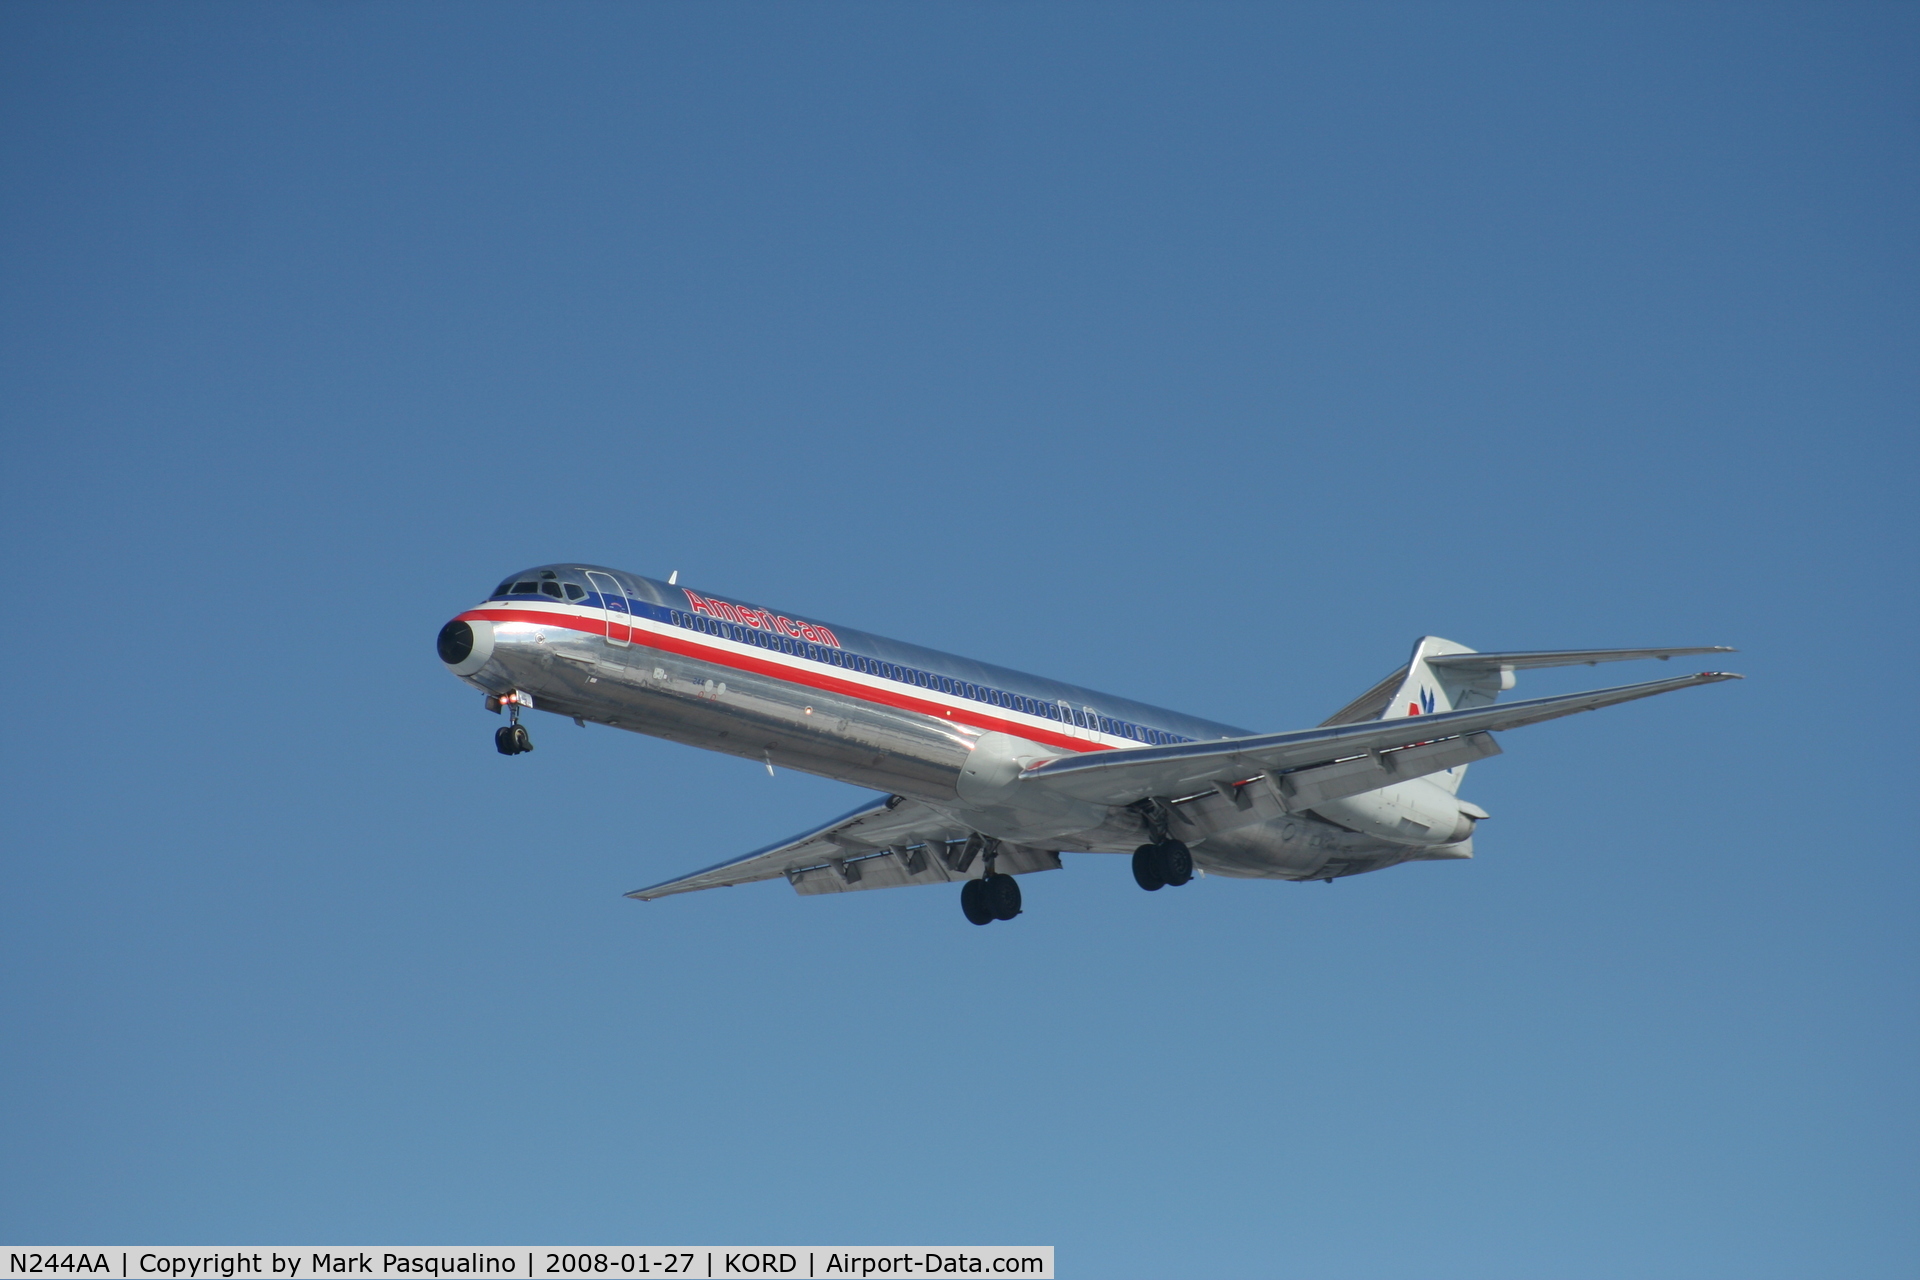 N244AA, 1984 McDonnell Douglas MD-82 (DC-9-82) C/N 49256, MD-82